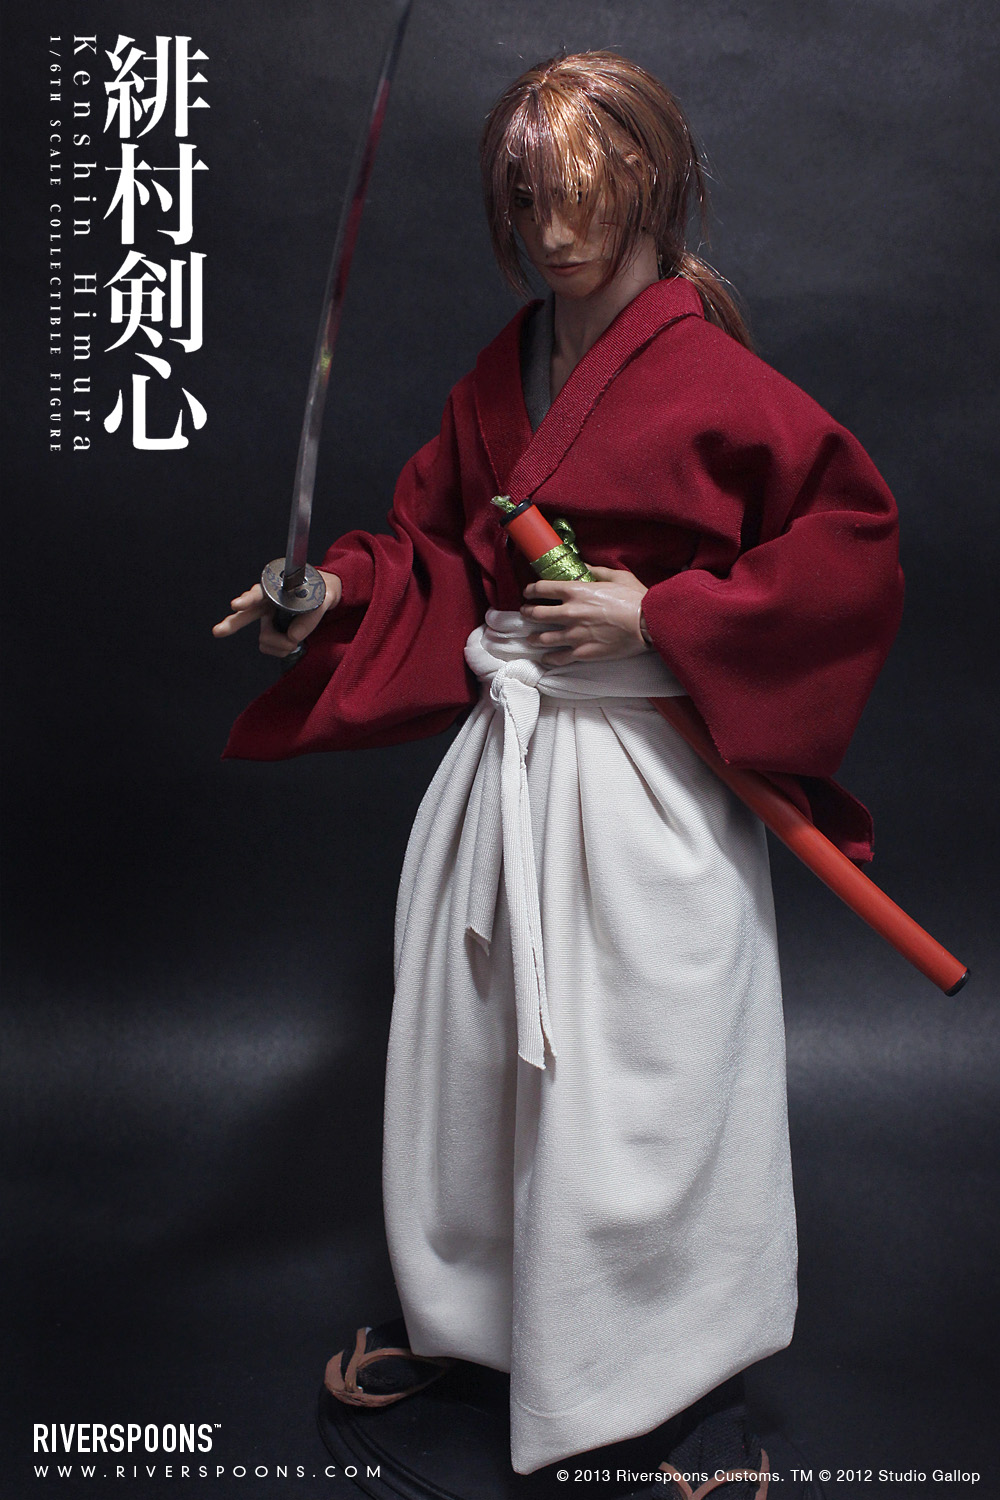 Riverspoons Studios: Riverspoons Customs: Kenshin Himura 1/6 Scale ...